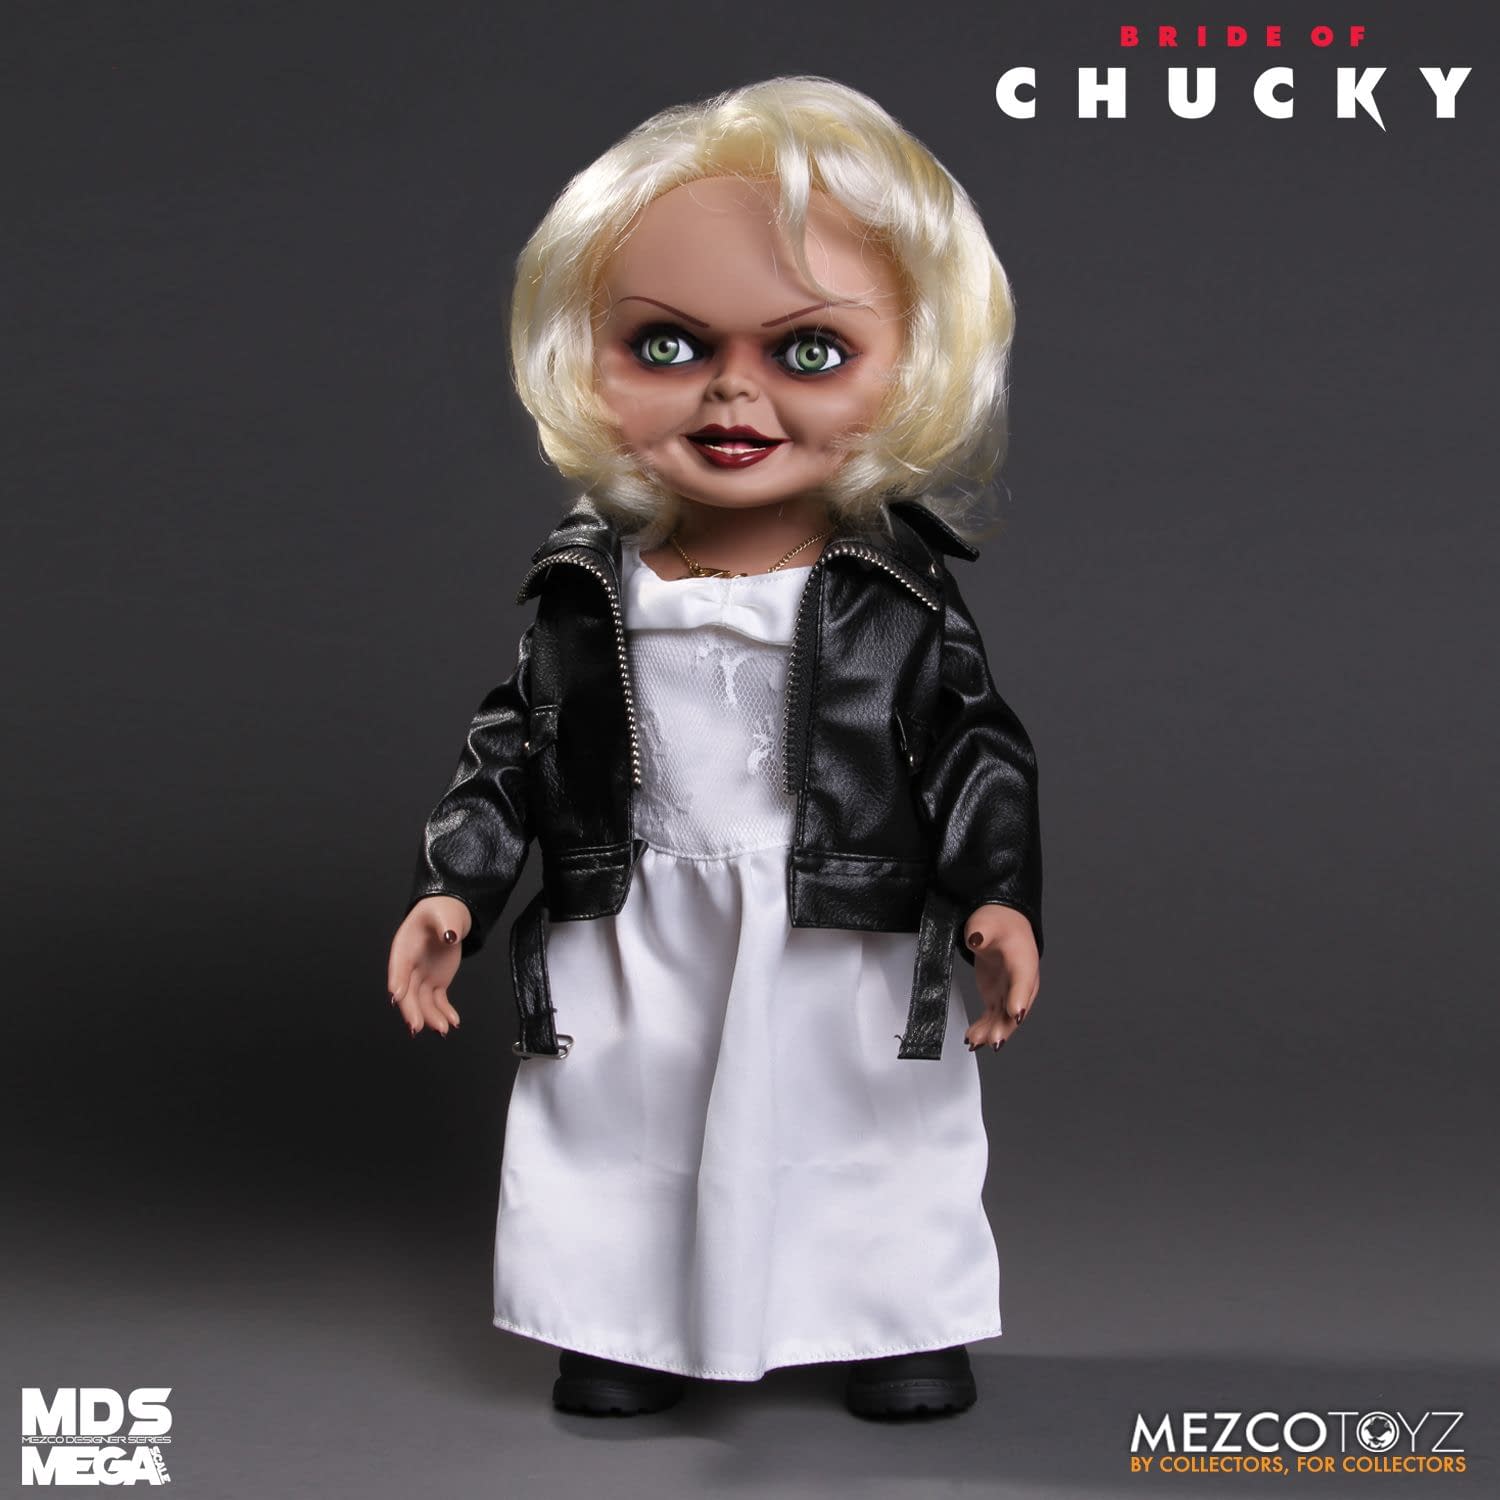 Mezco Toyz Bride of Chucky Tiffany Doll